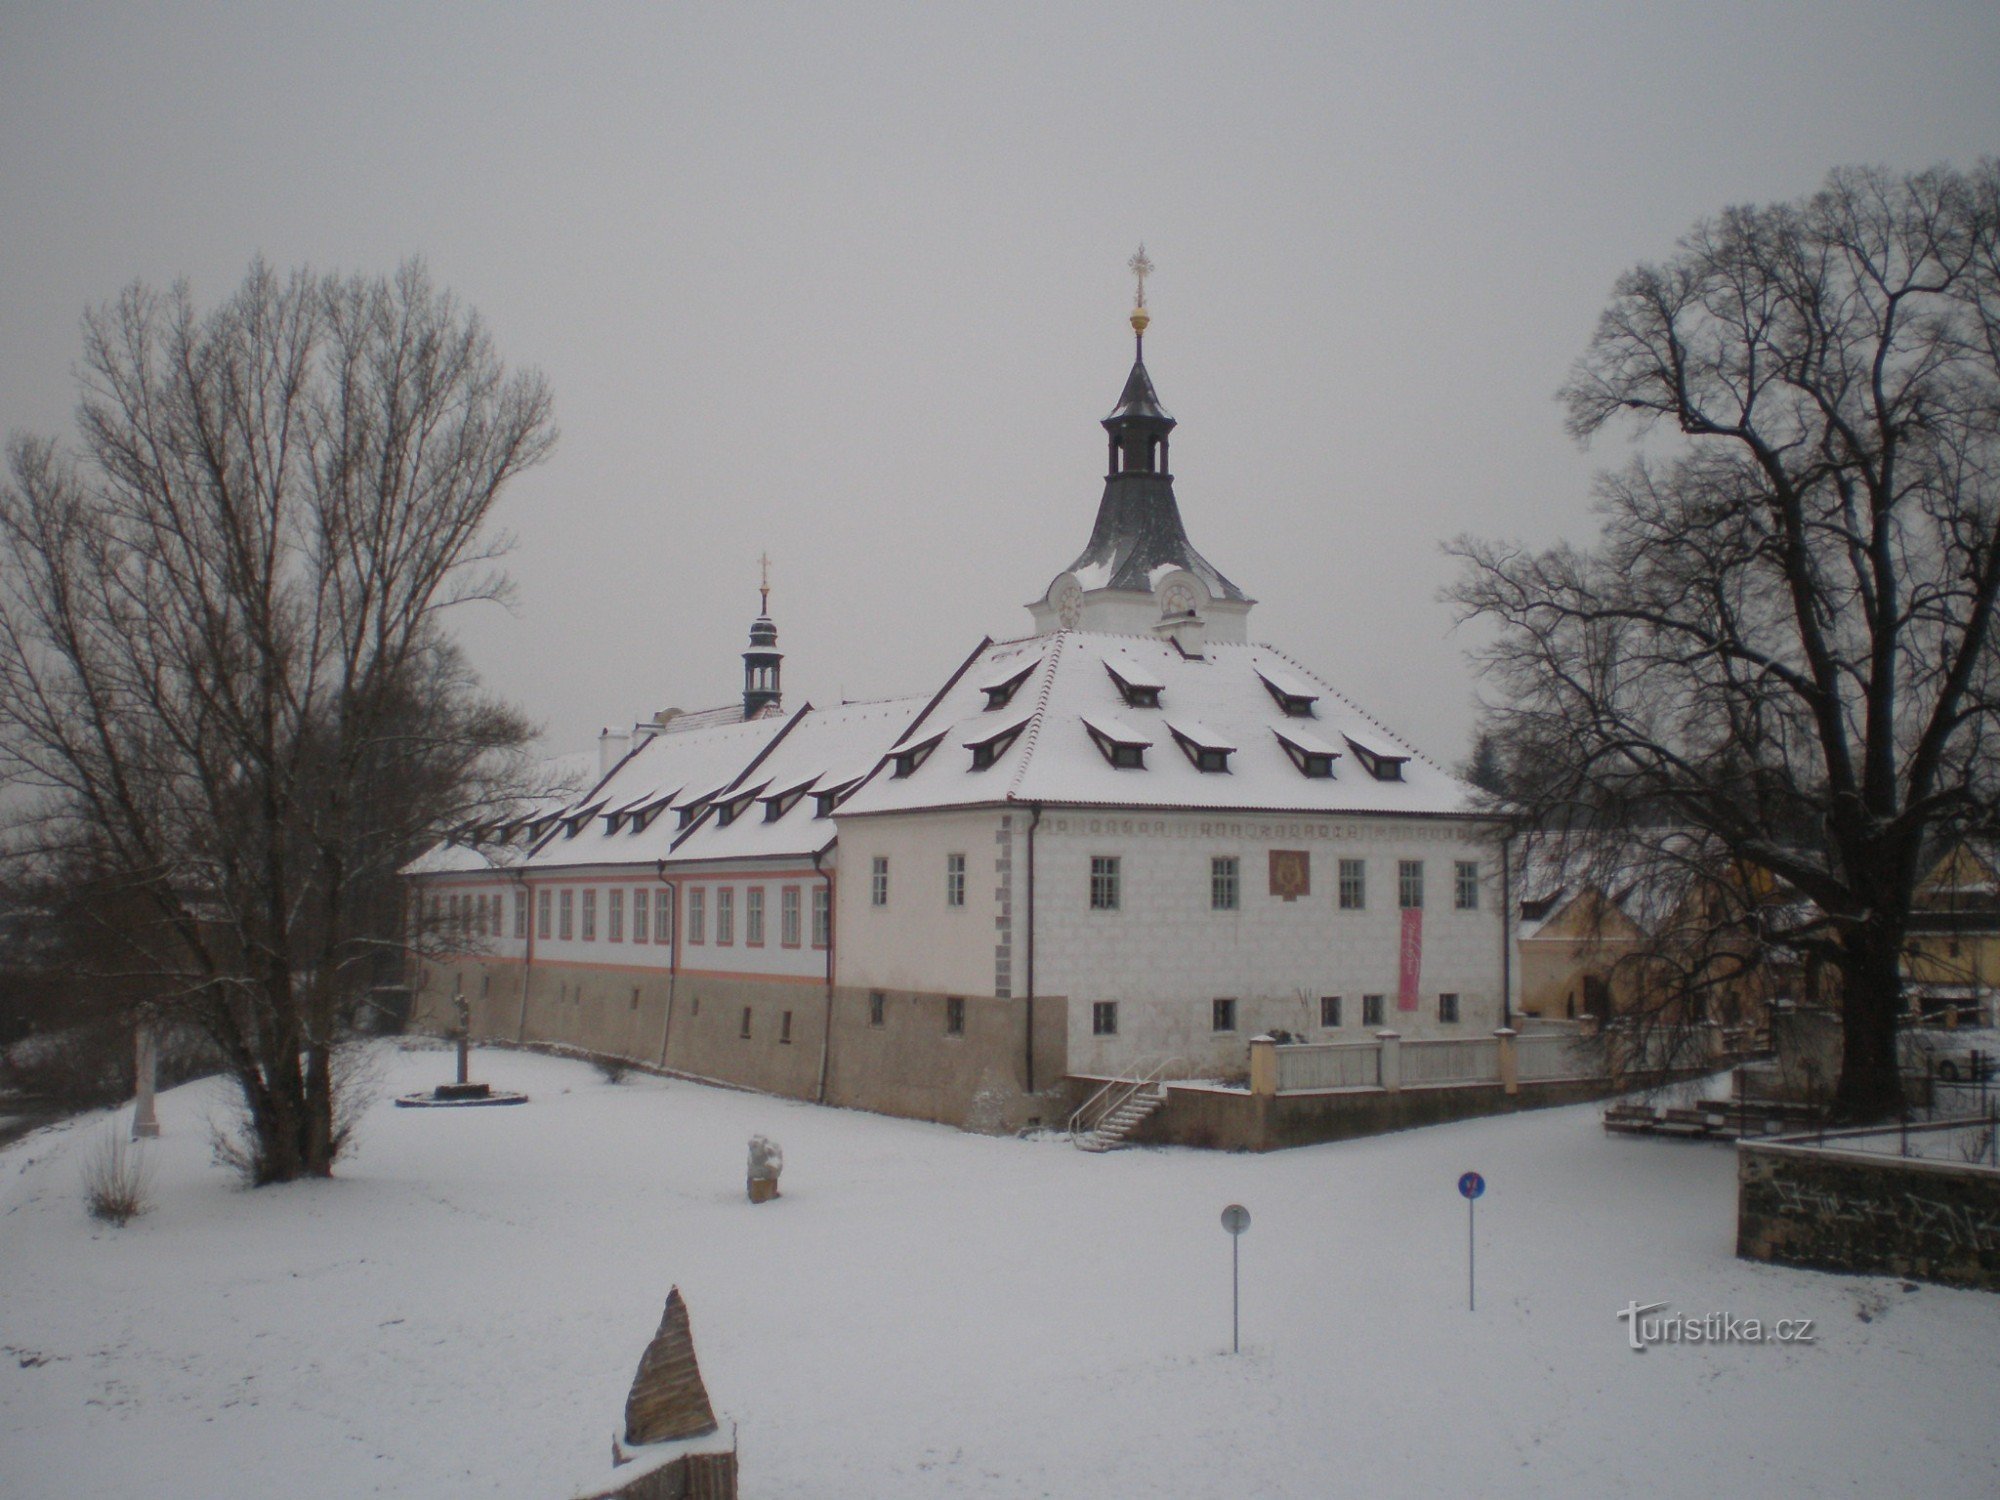 Dobřichovice - lâu đài